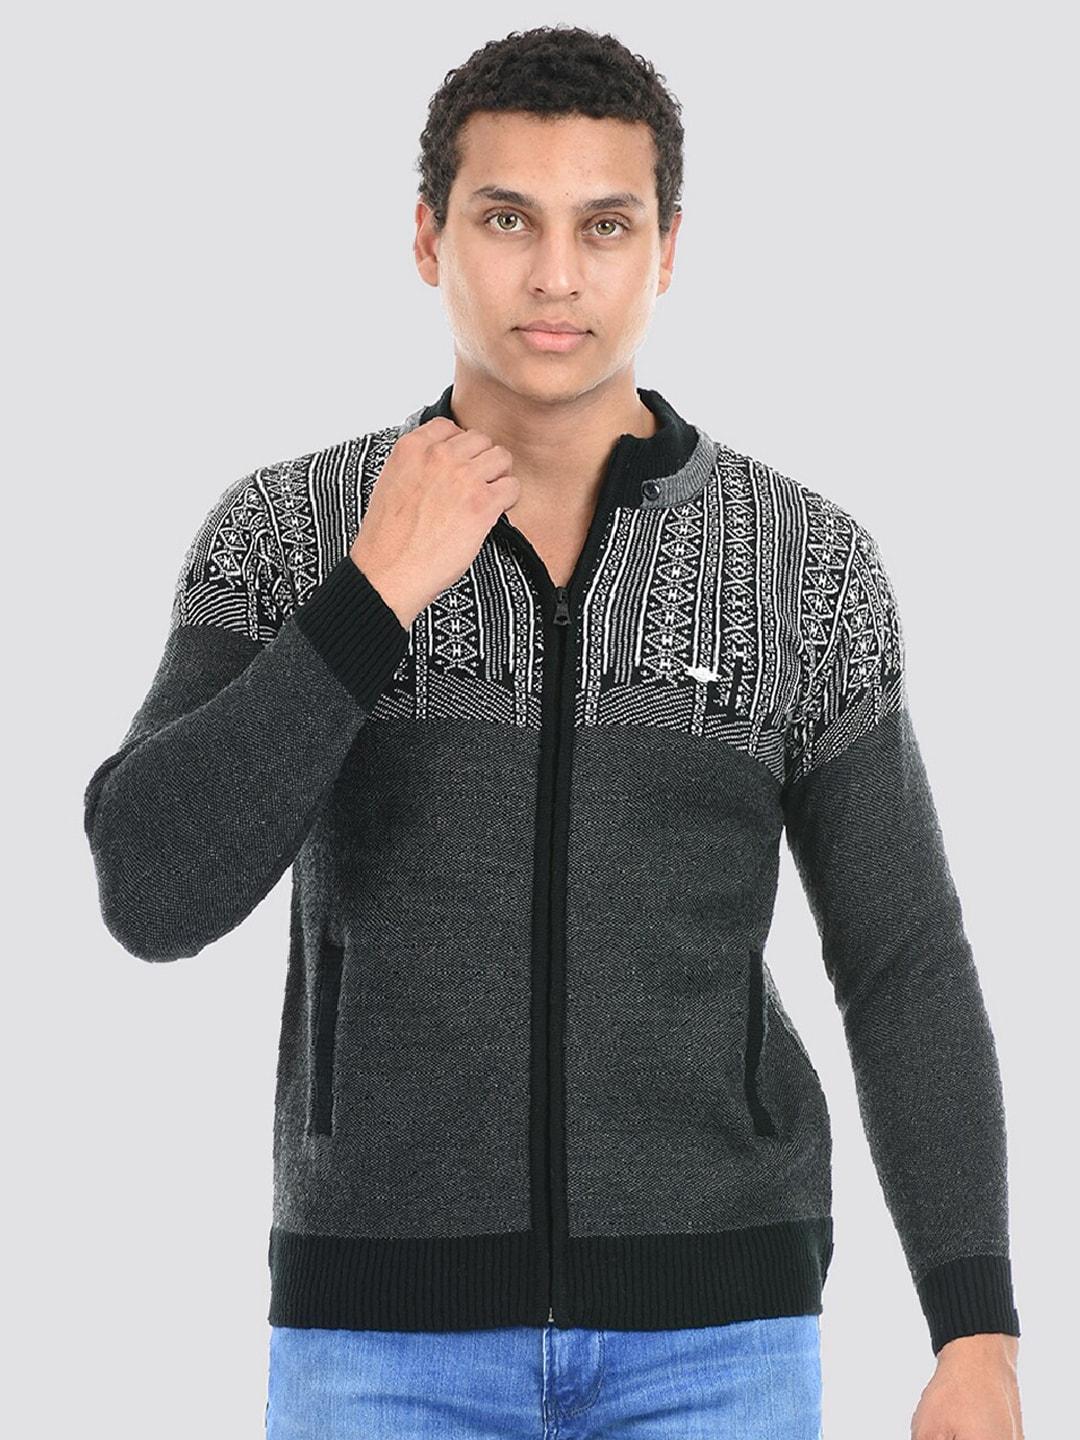 cloak-&-decker-by-monte-carlo-geometric-self-design-front-open-sweater